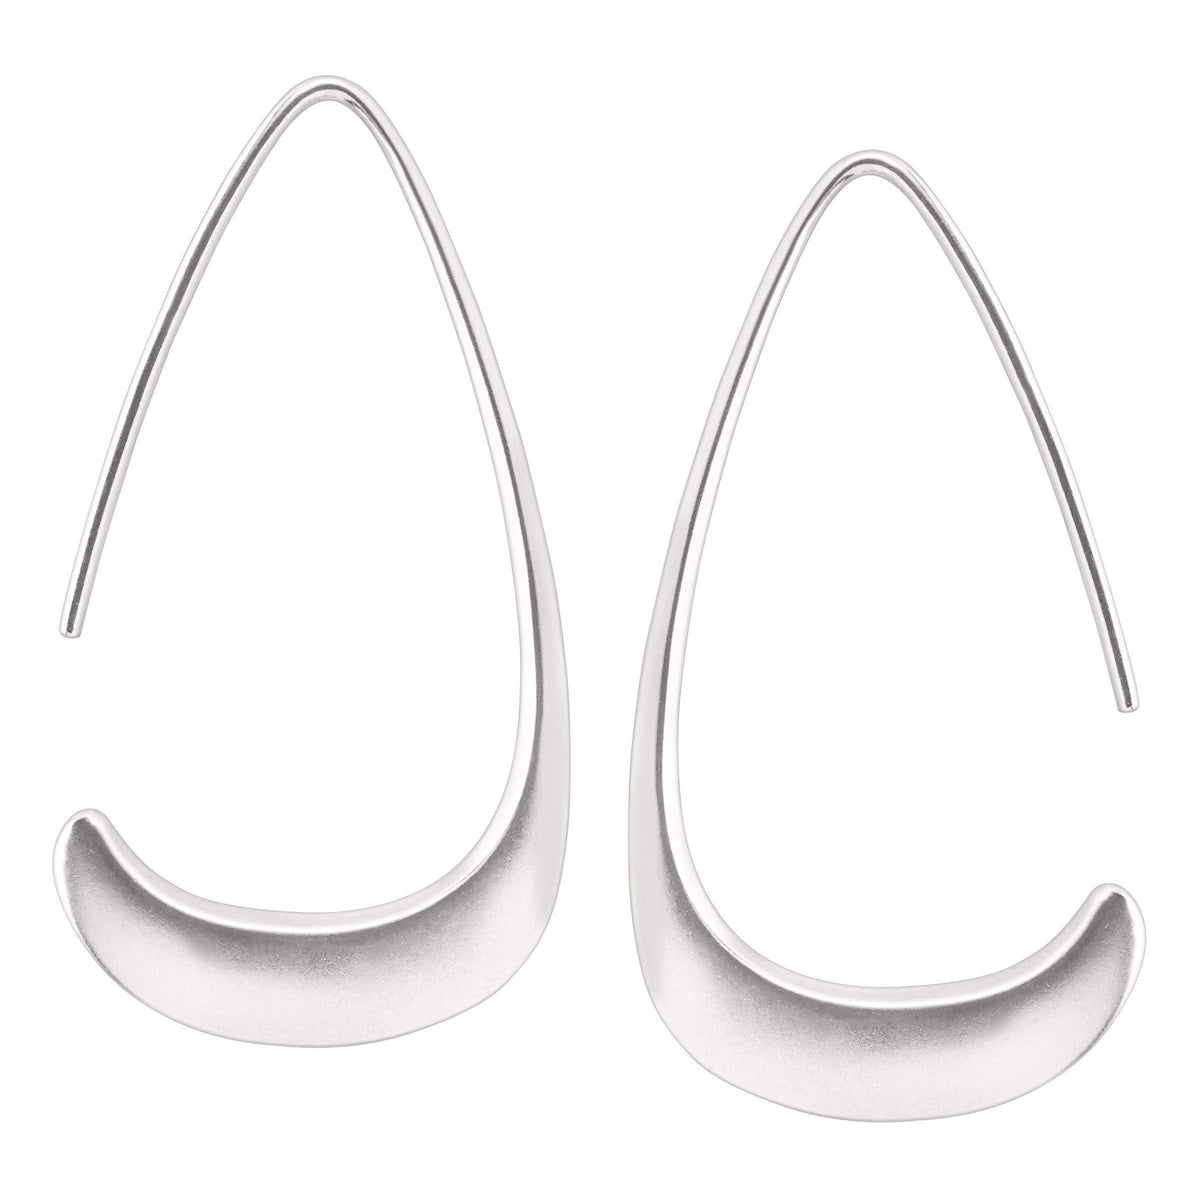 Silpada 'Silhouette' Drop Earrings in Sterling Silver